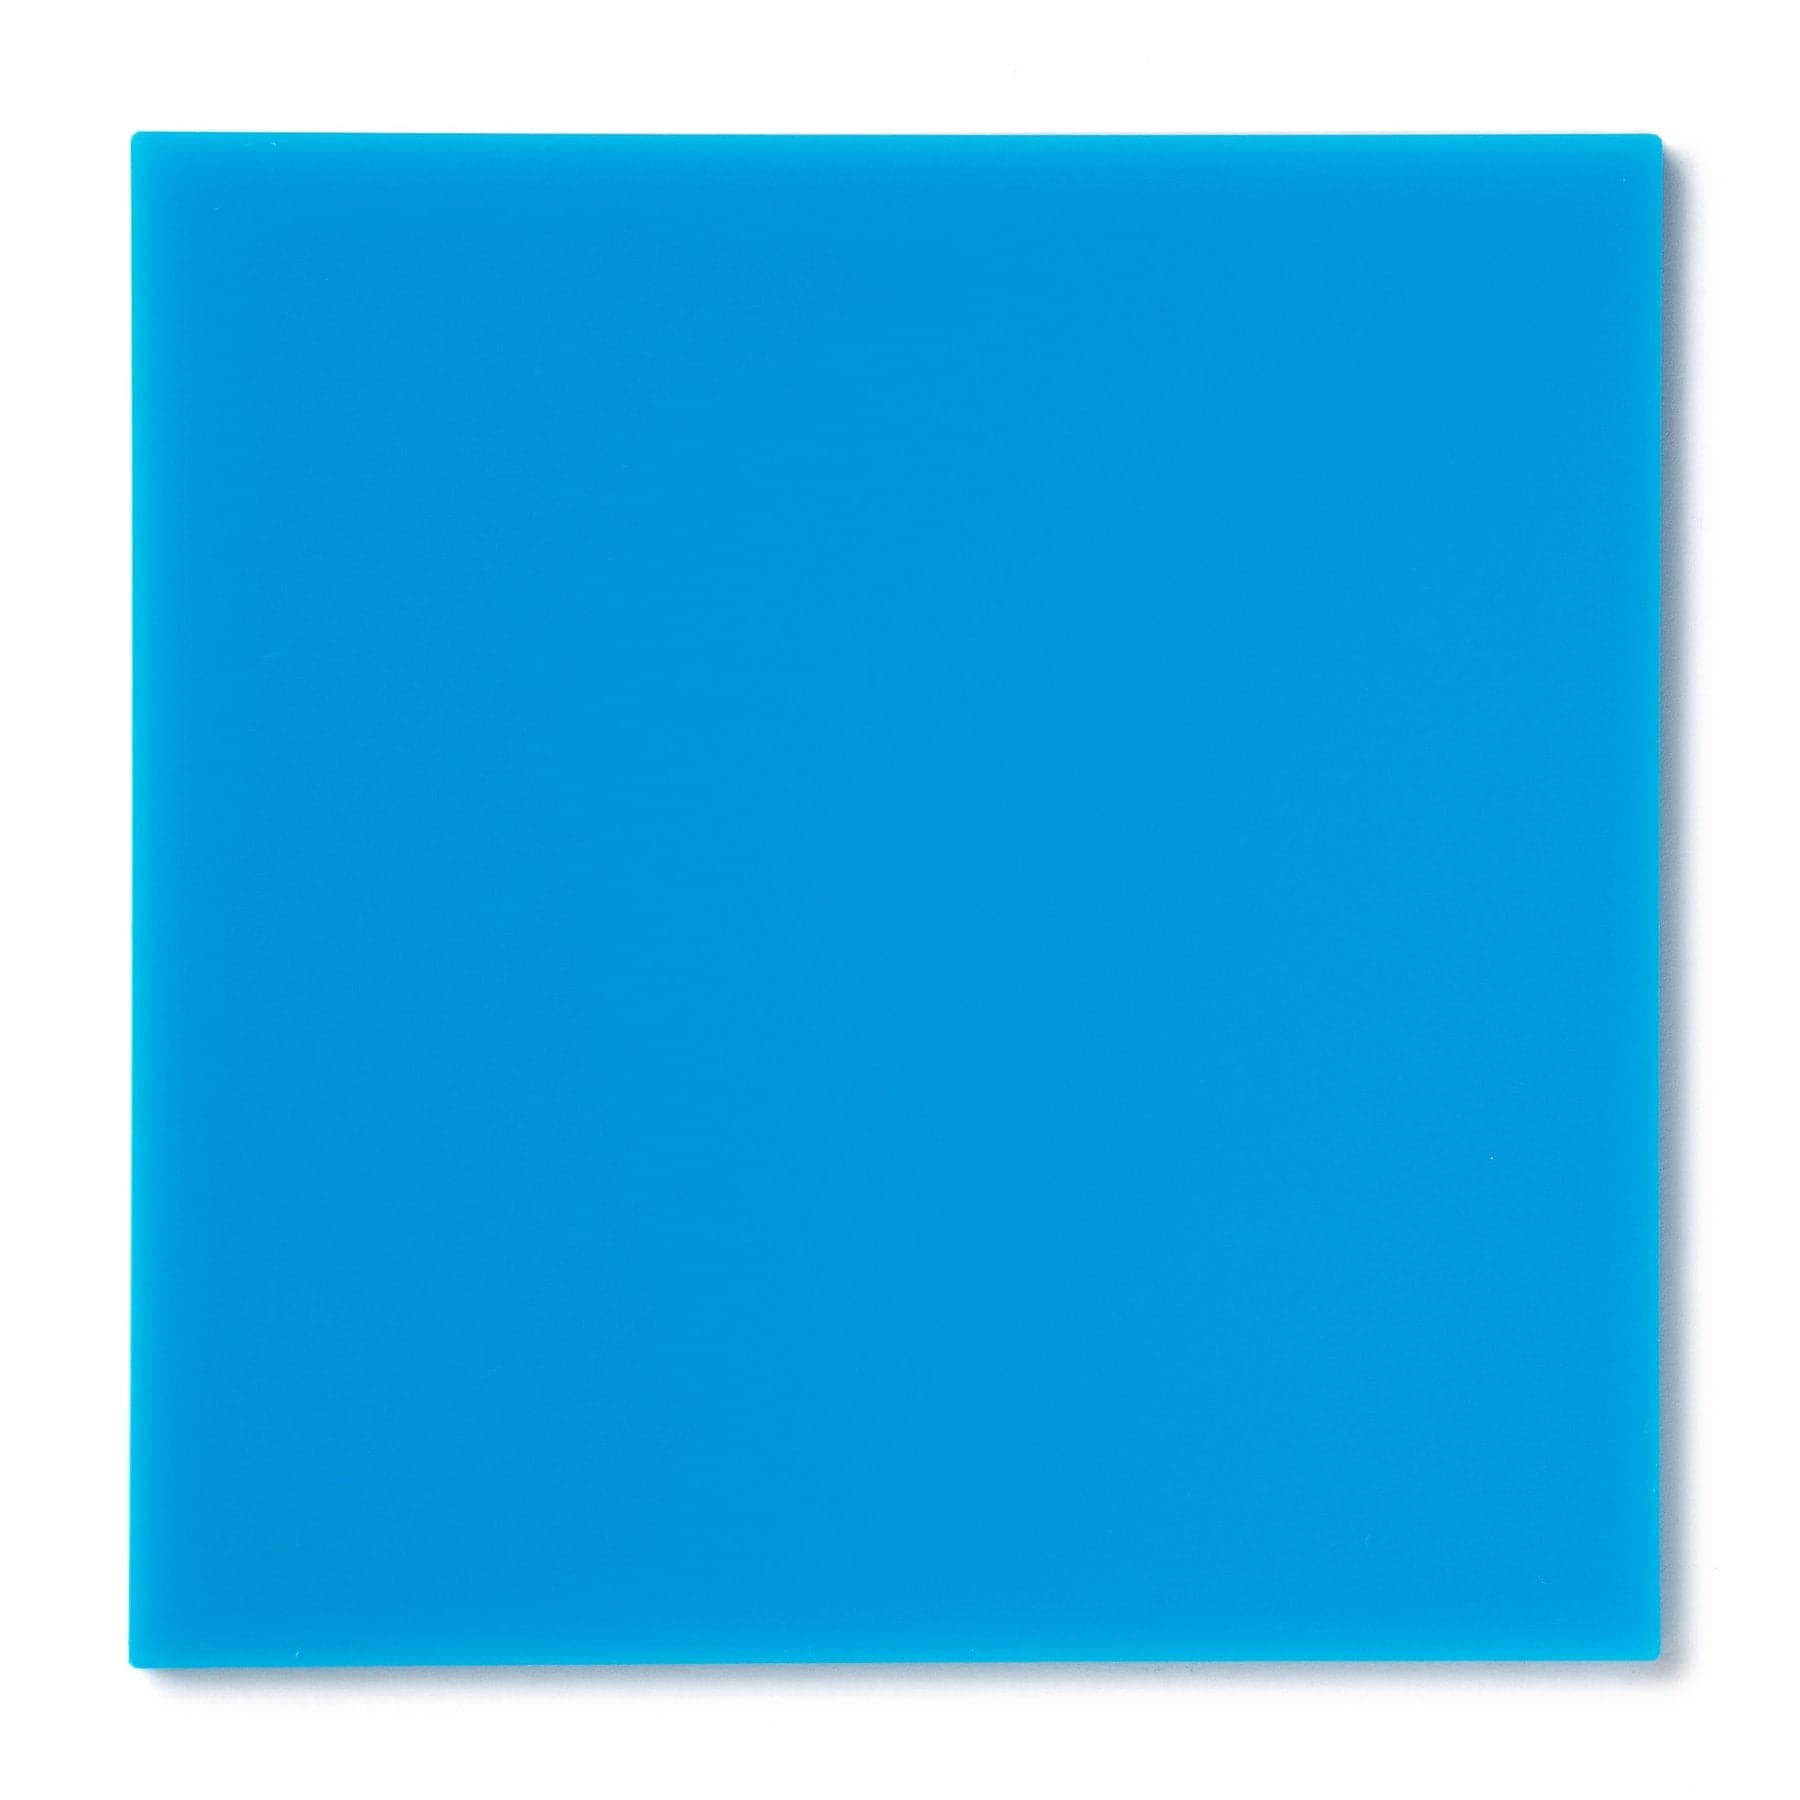 Acrylic Sheet 1/8" Baby Blue Translucent #2648